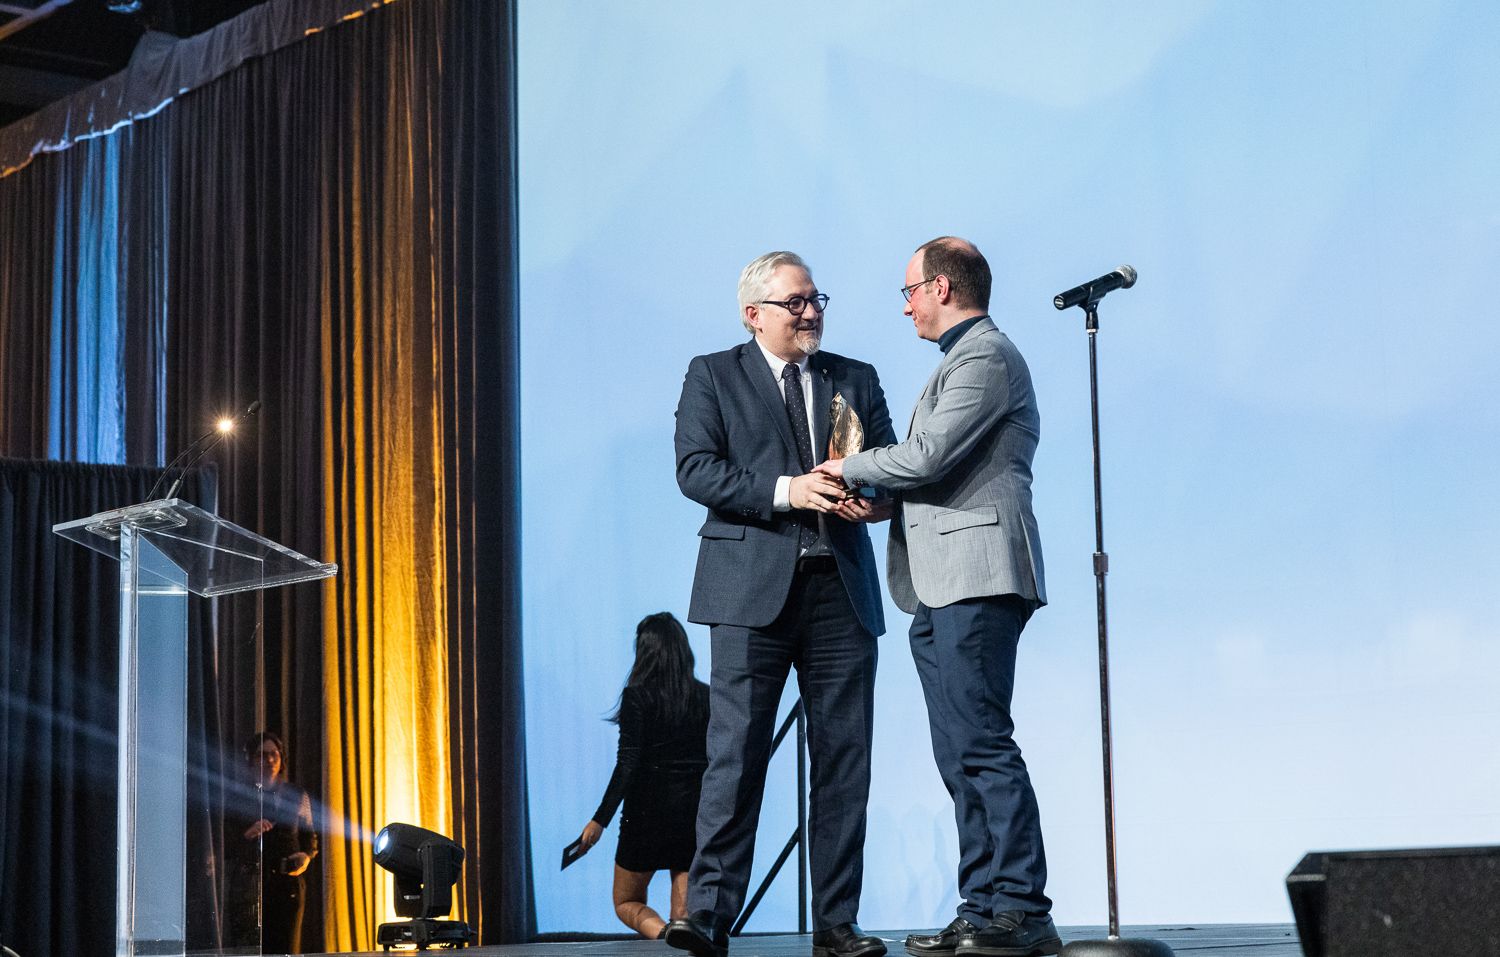 Le lauréat du prix Relève d'excellence, Maxime Boissonneault, en compagnie d'Hugo Cyr, directeur général de l'ENAP, partenaire du prix.